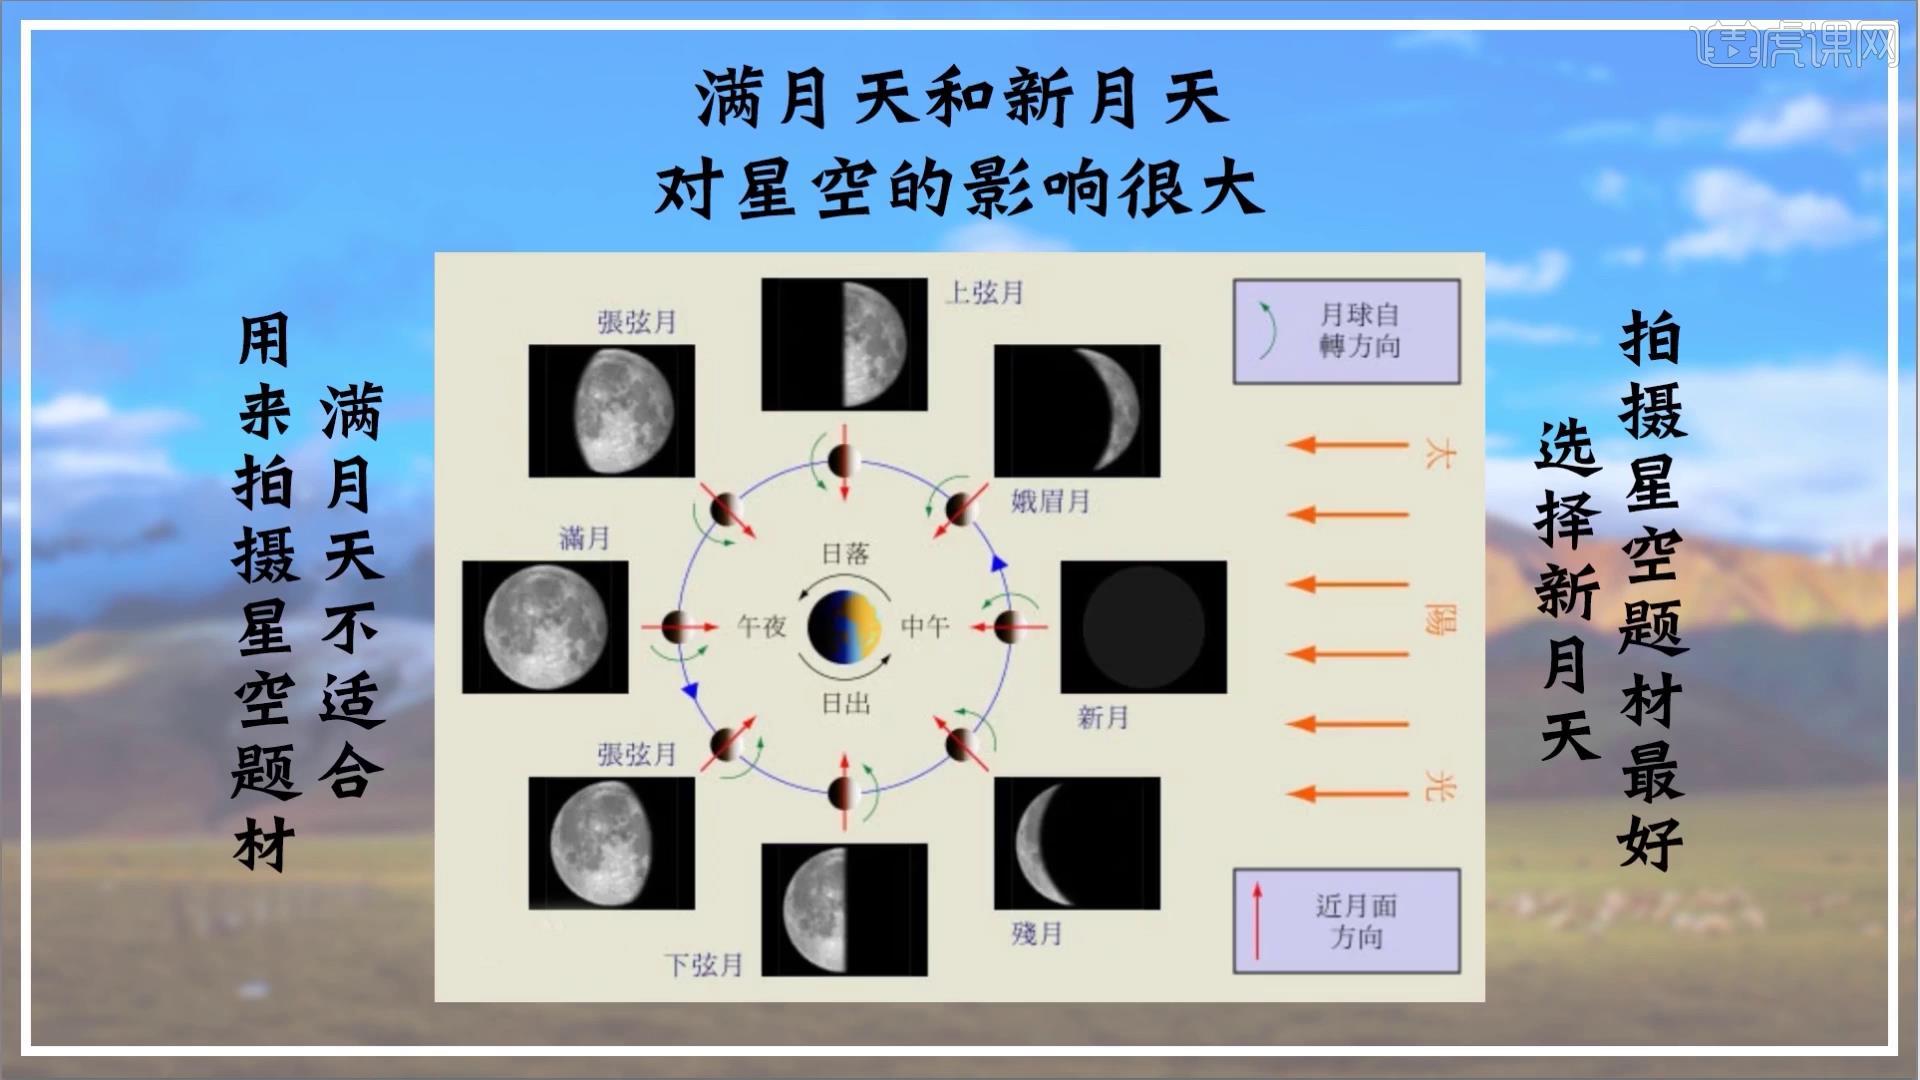 太阳和月亮之间,新月天是月亮慢慢运行到太阳和地球之间了,用月相查询